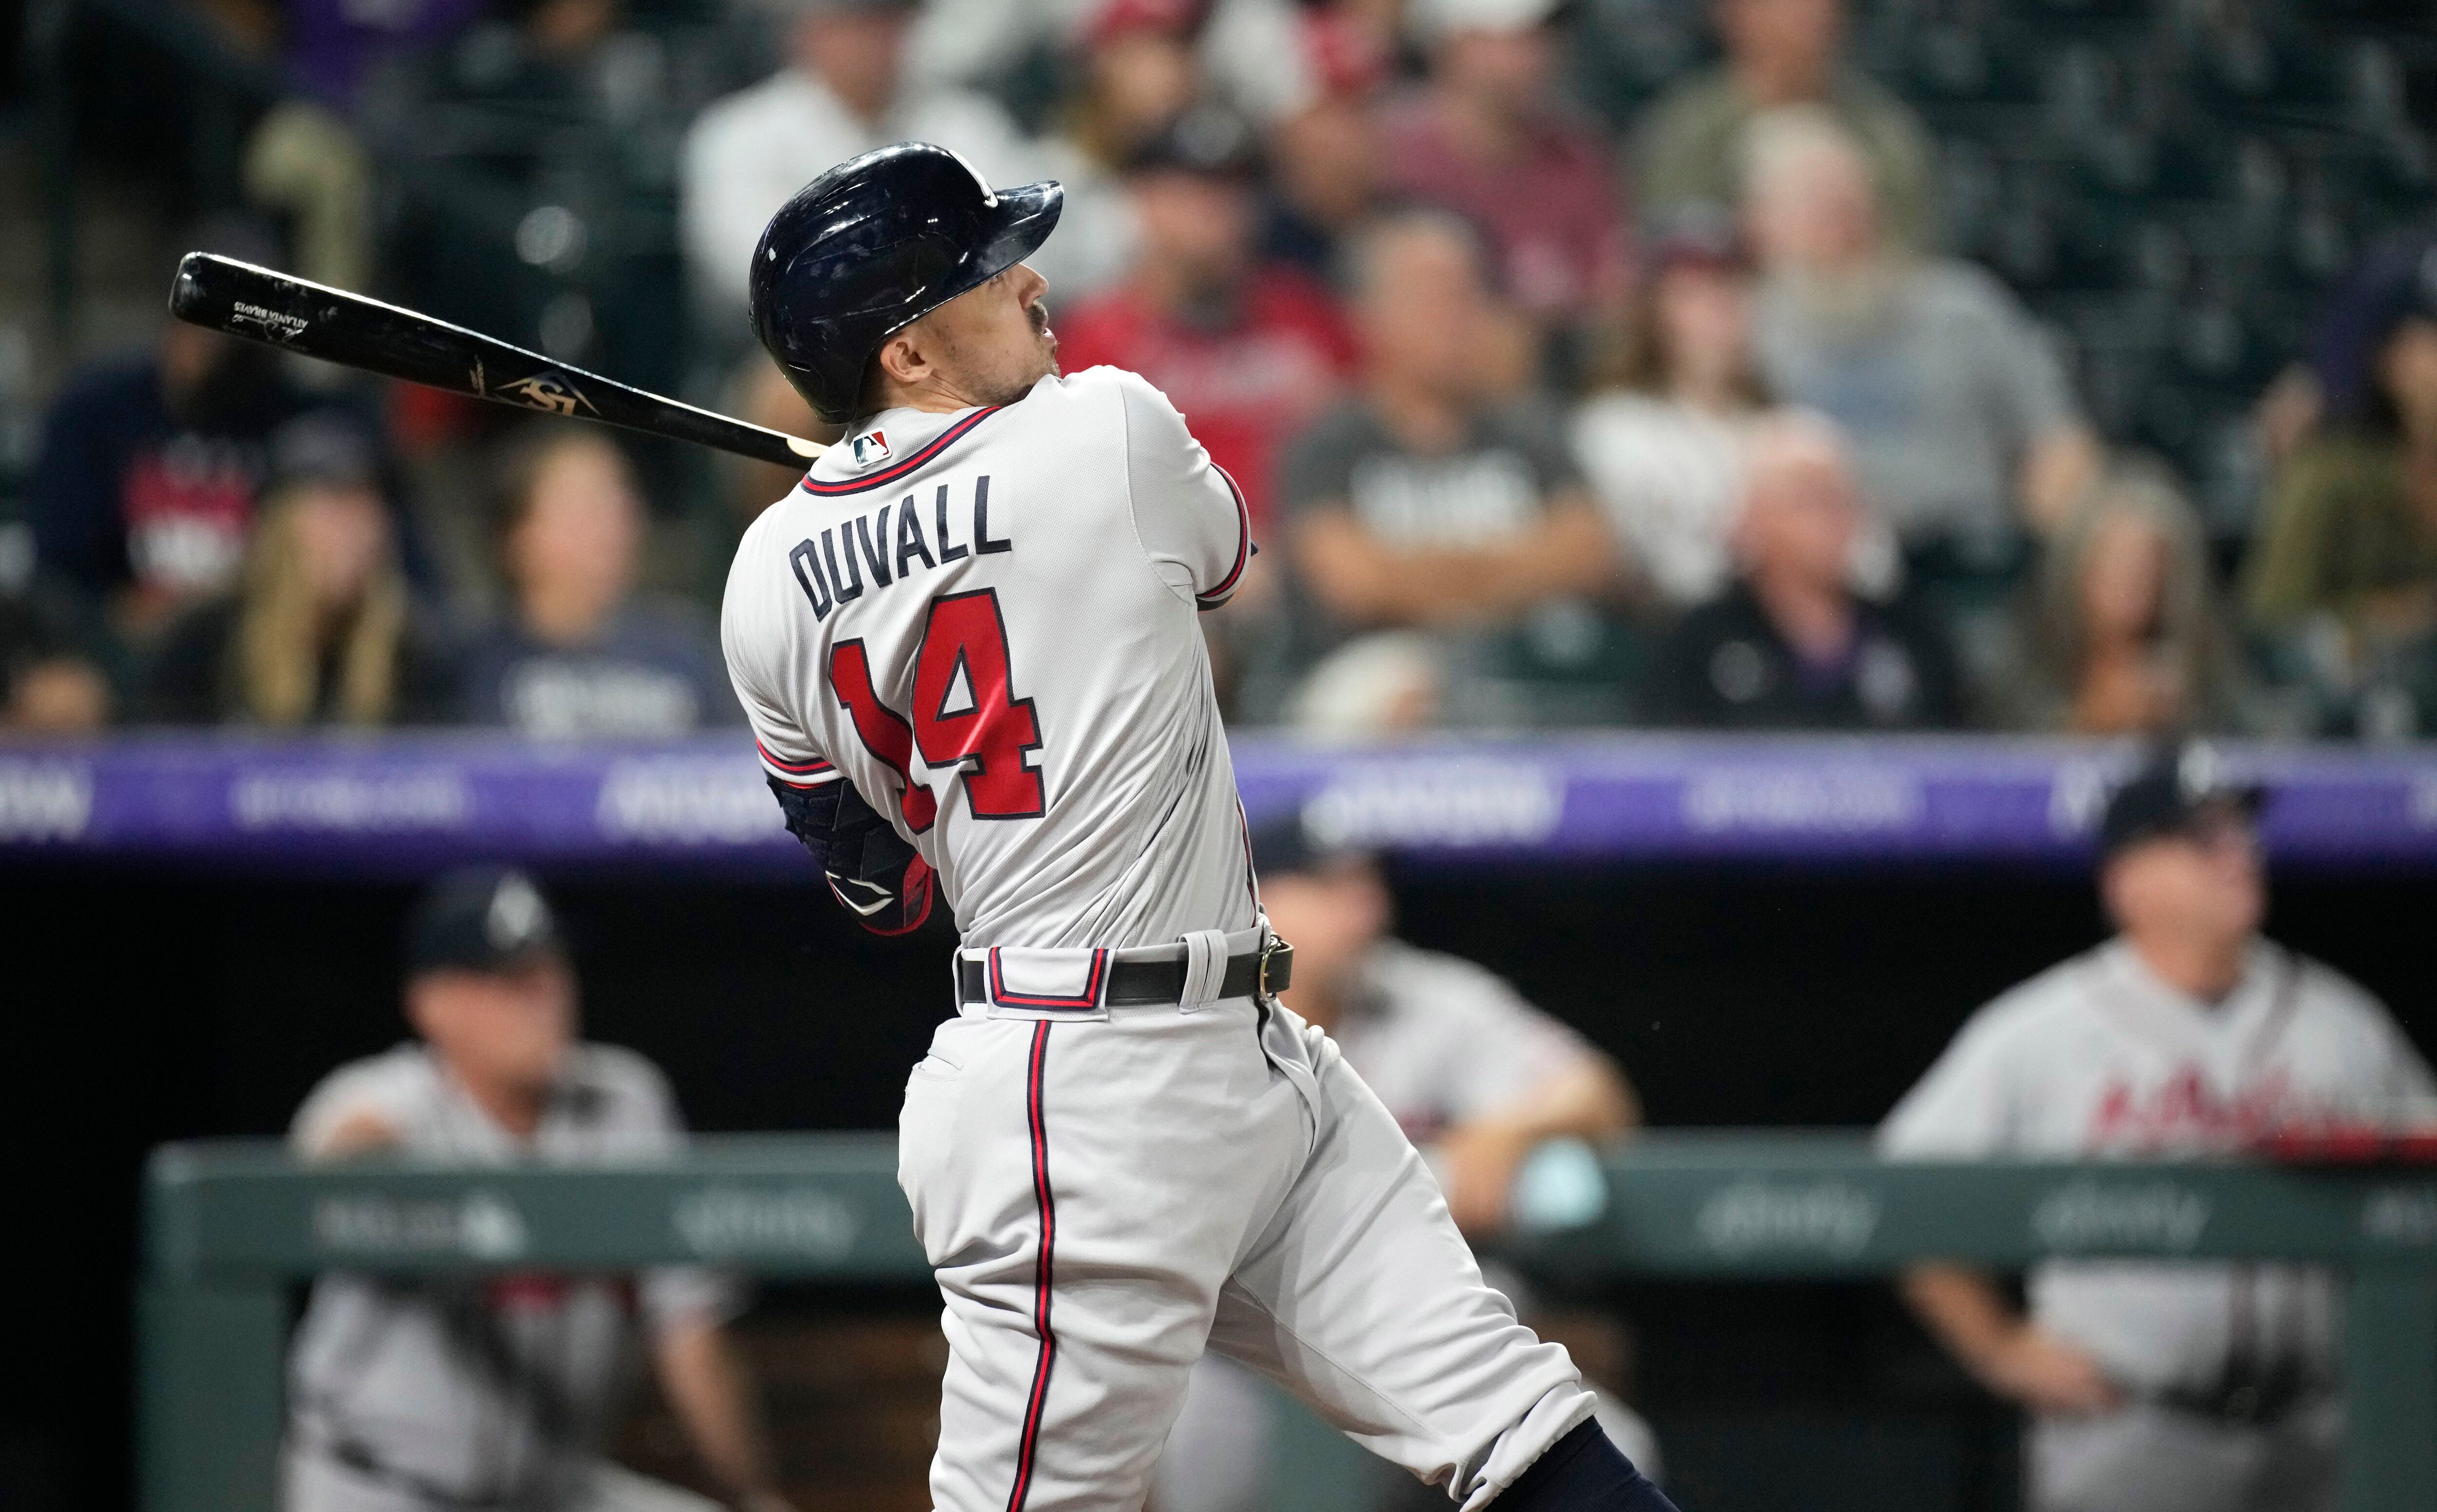 Adam Duvall crushes 477 foot home run - 9/2/21 